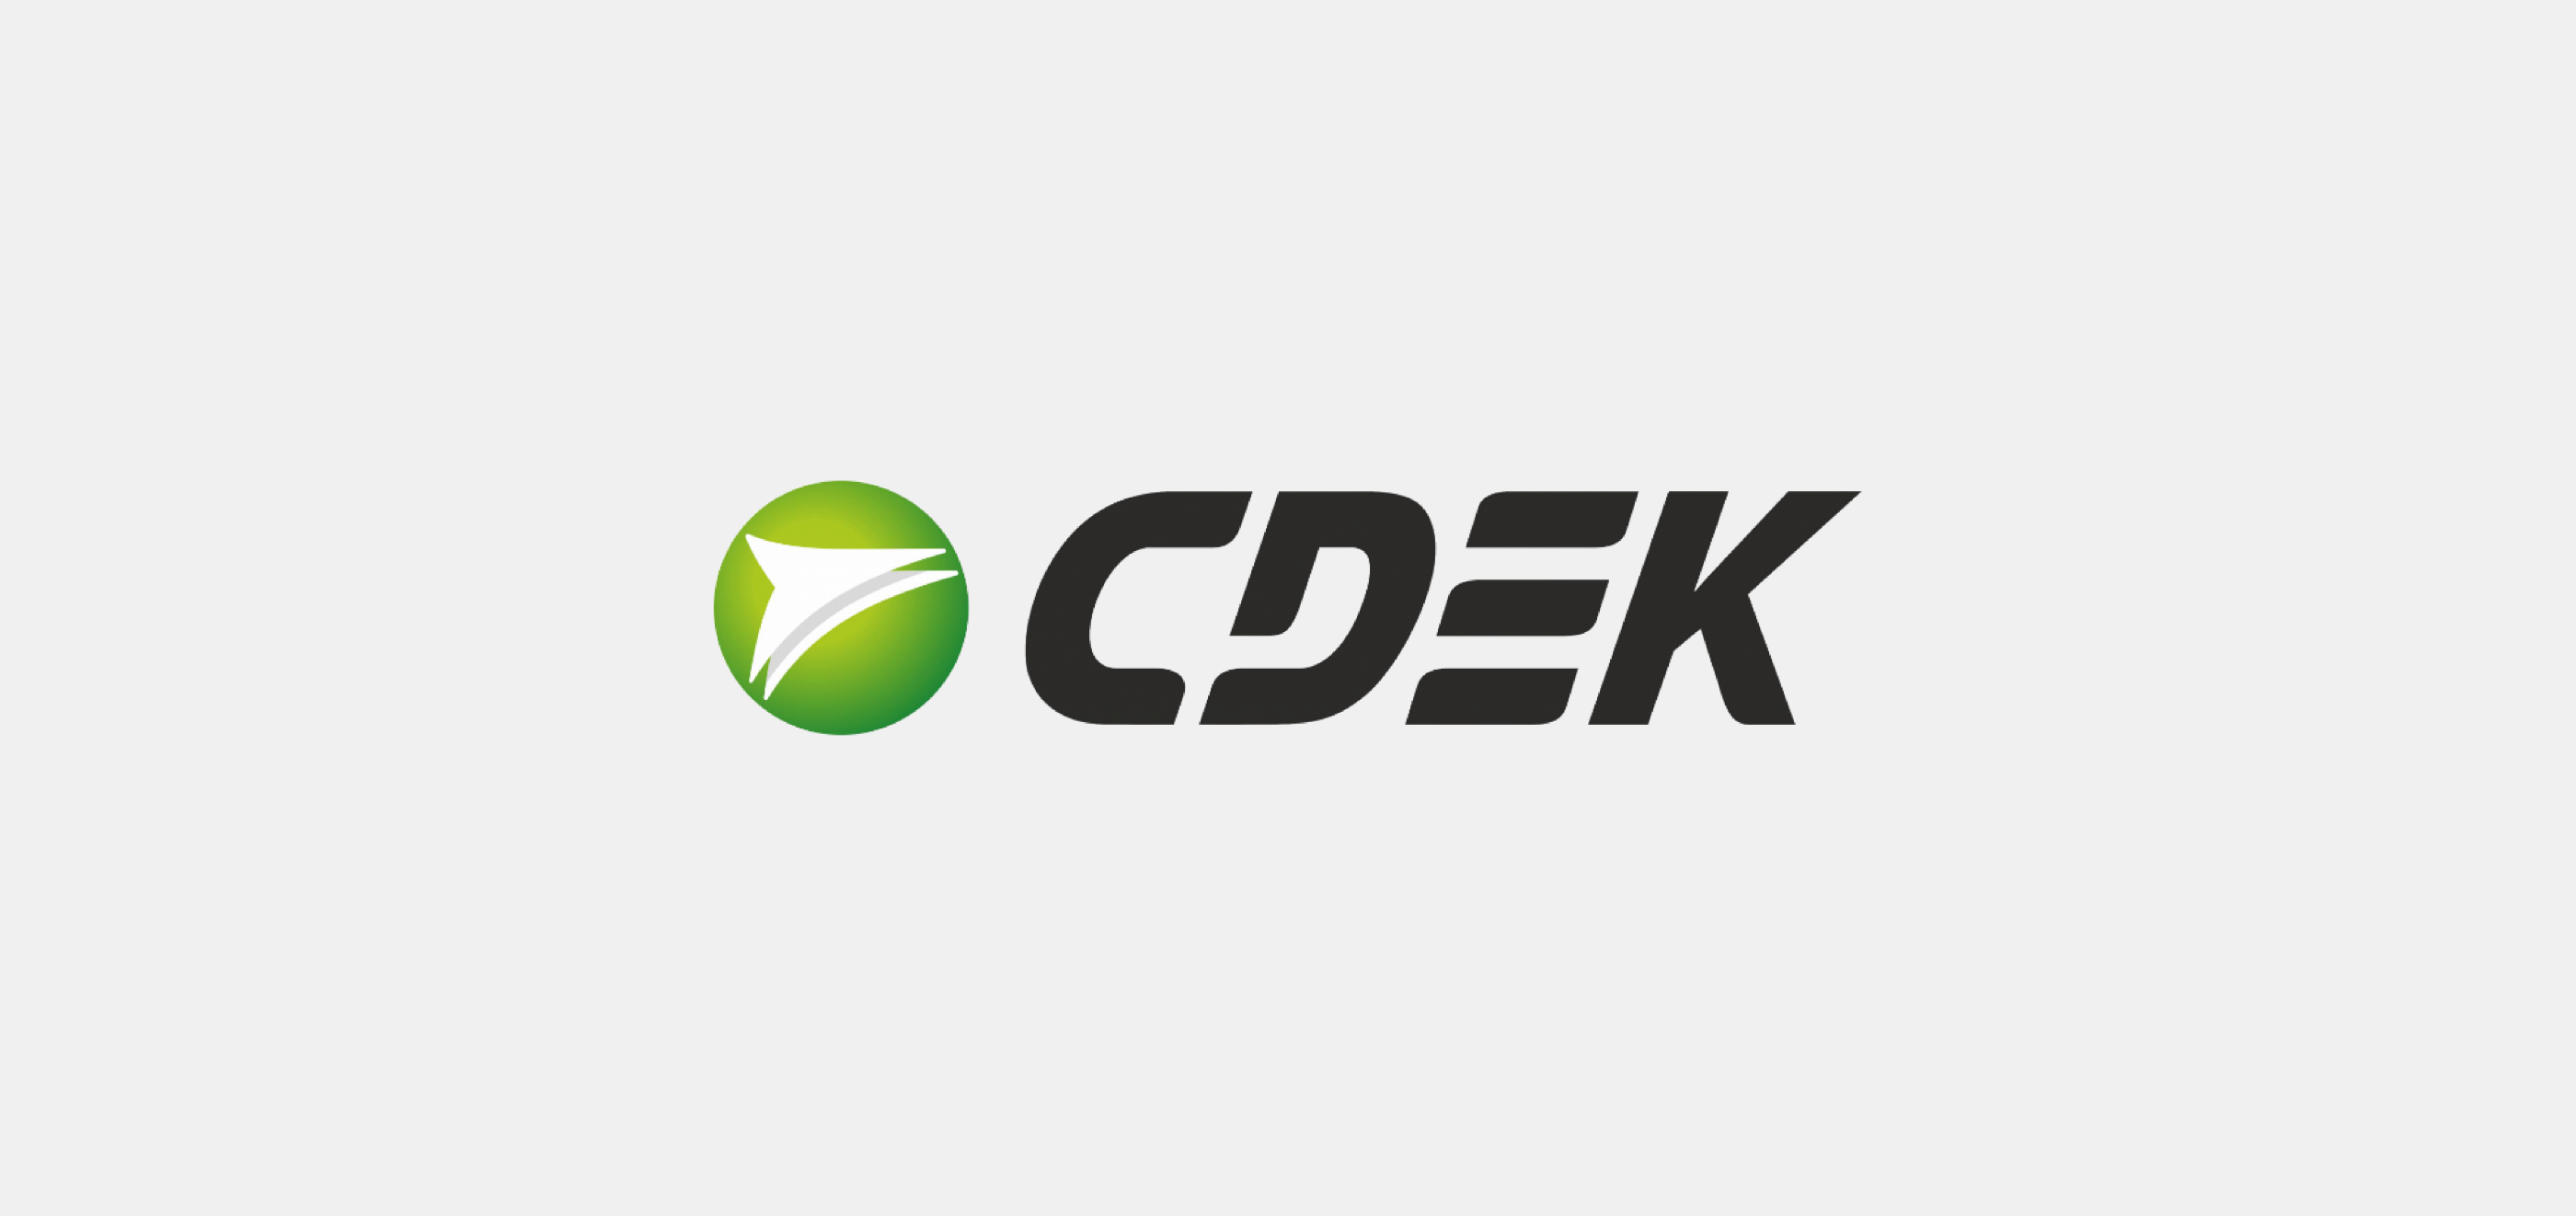 C do ru. СДЭК. CDEK логотип. Транспортная компания СДЭК. СДЭК логистические решения логотип.